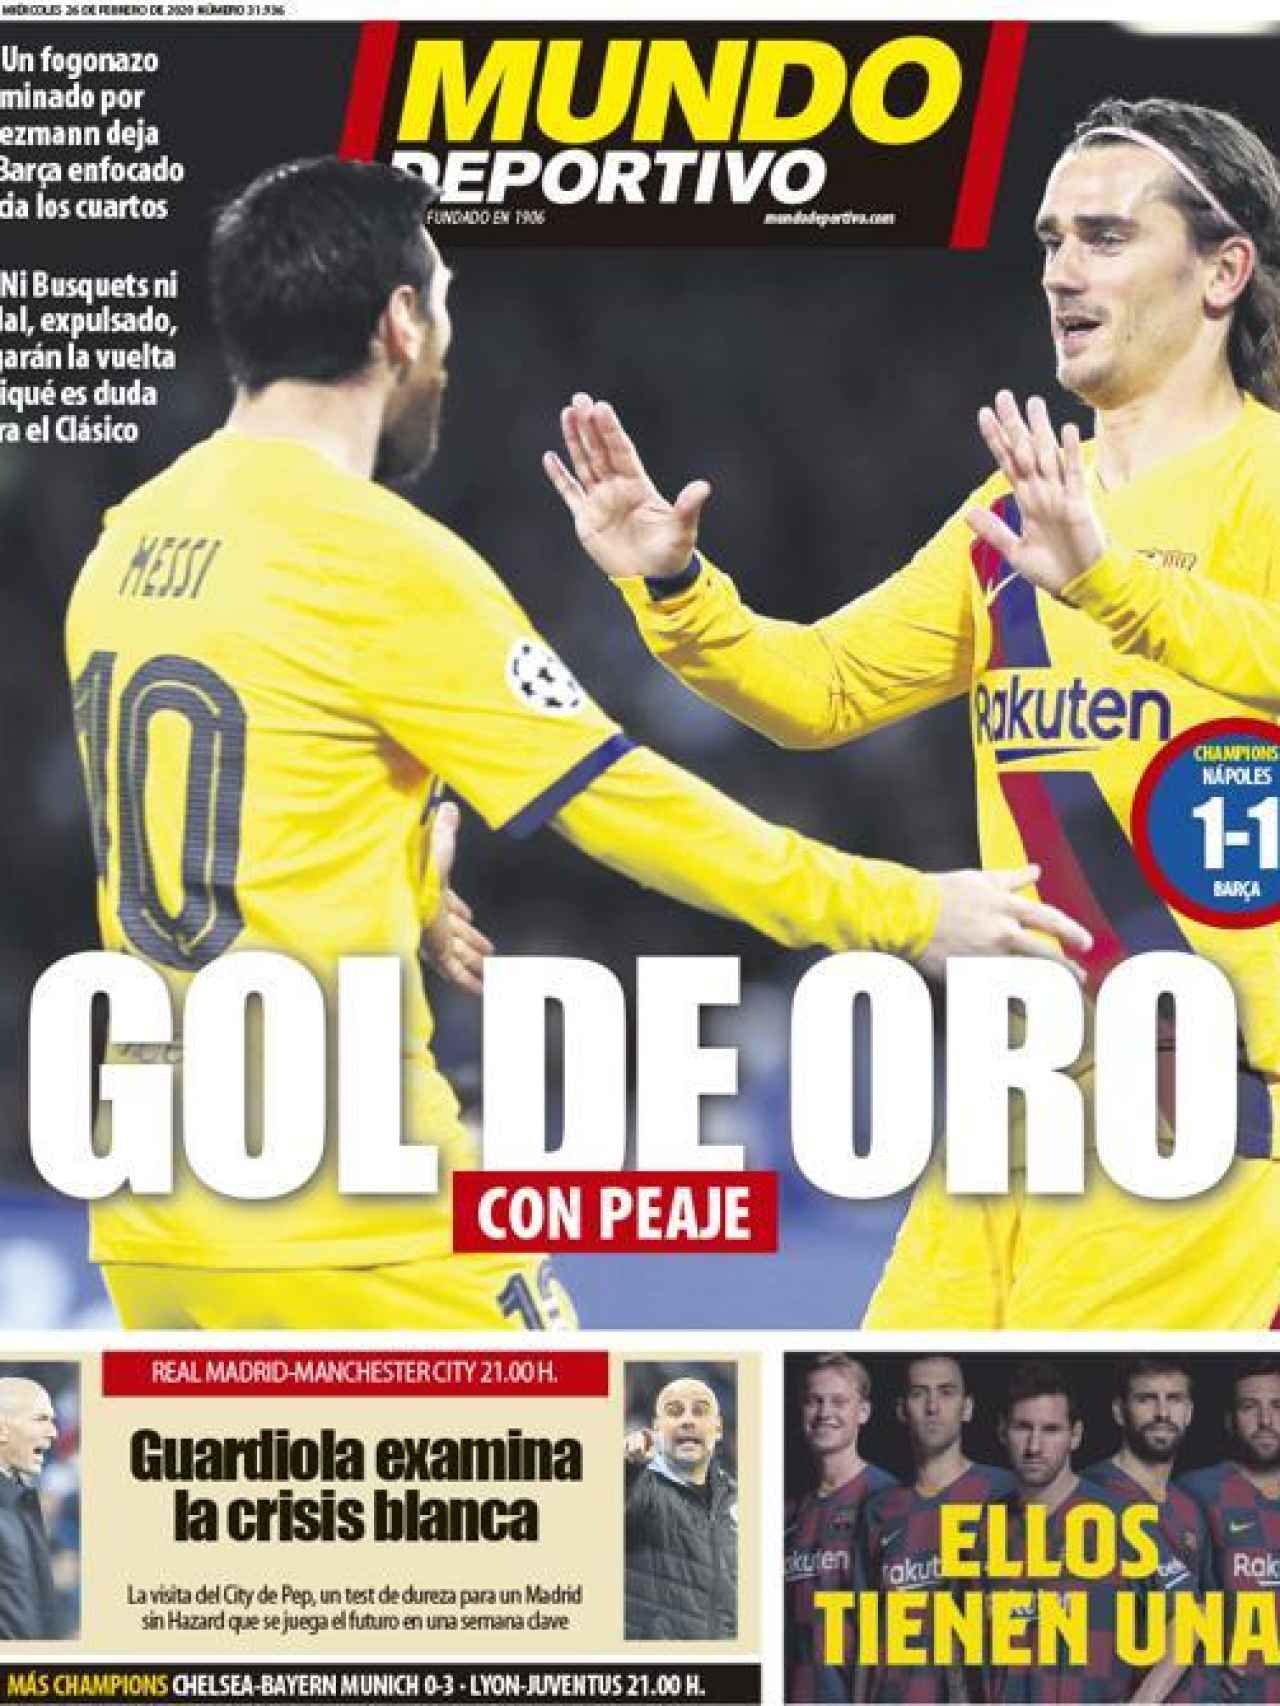 La portada del diario Mundo Deportivo (26/02/2020)